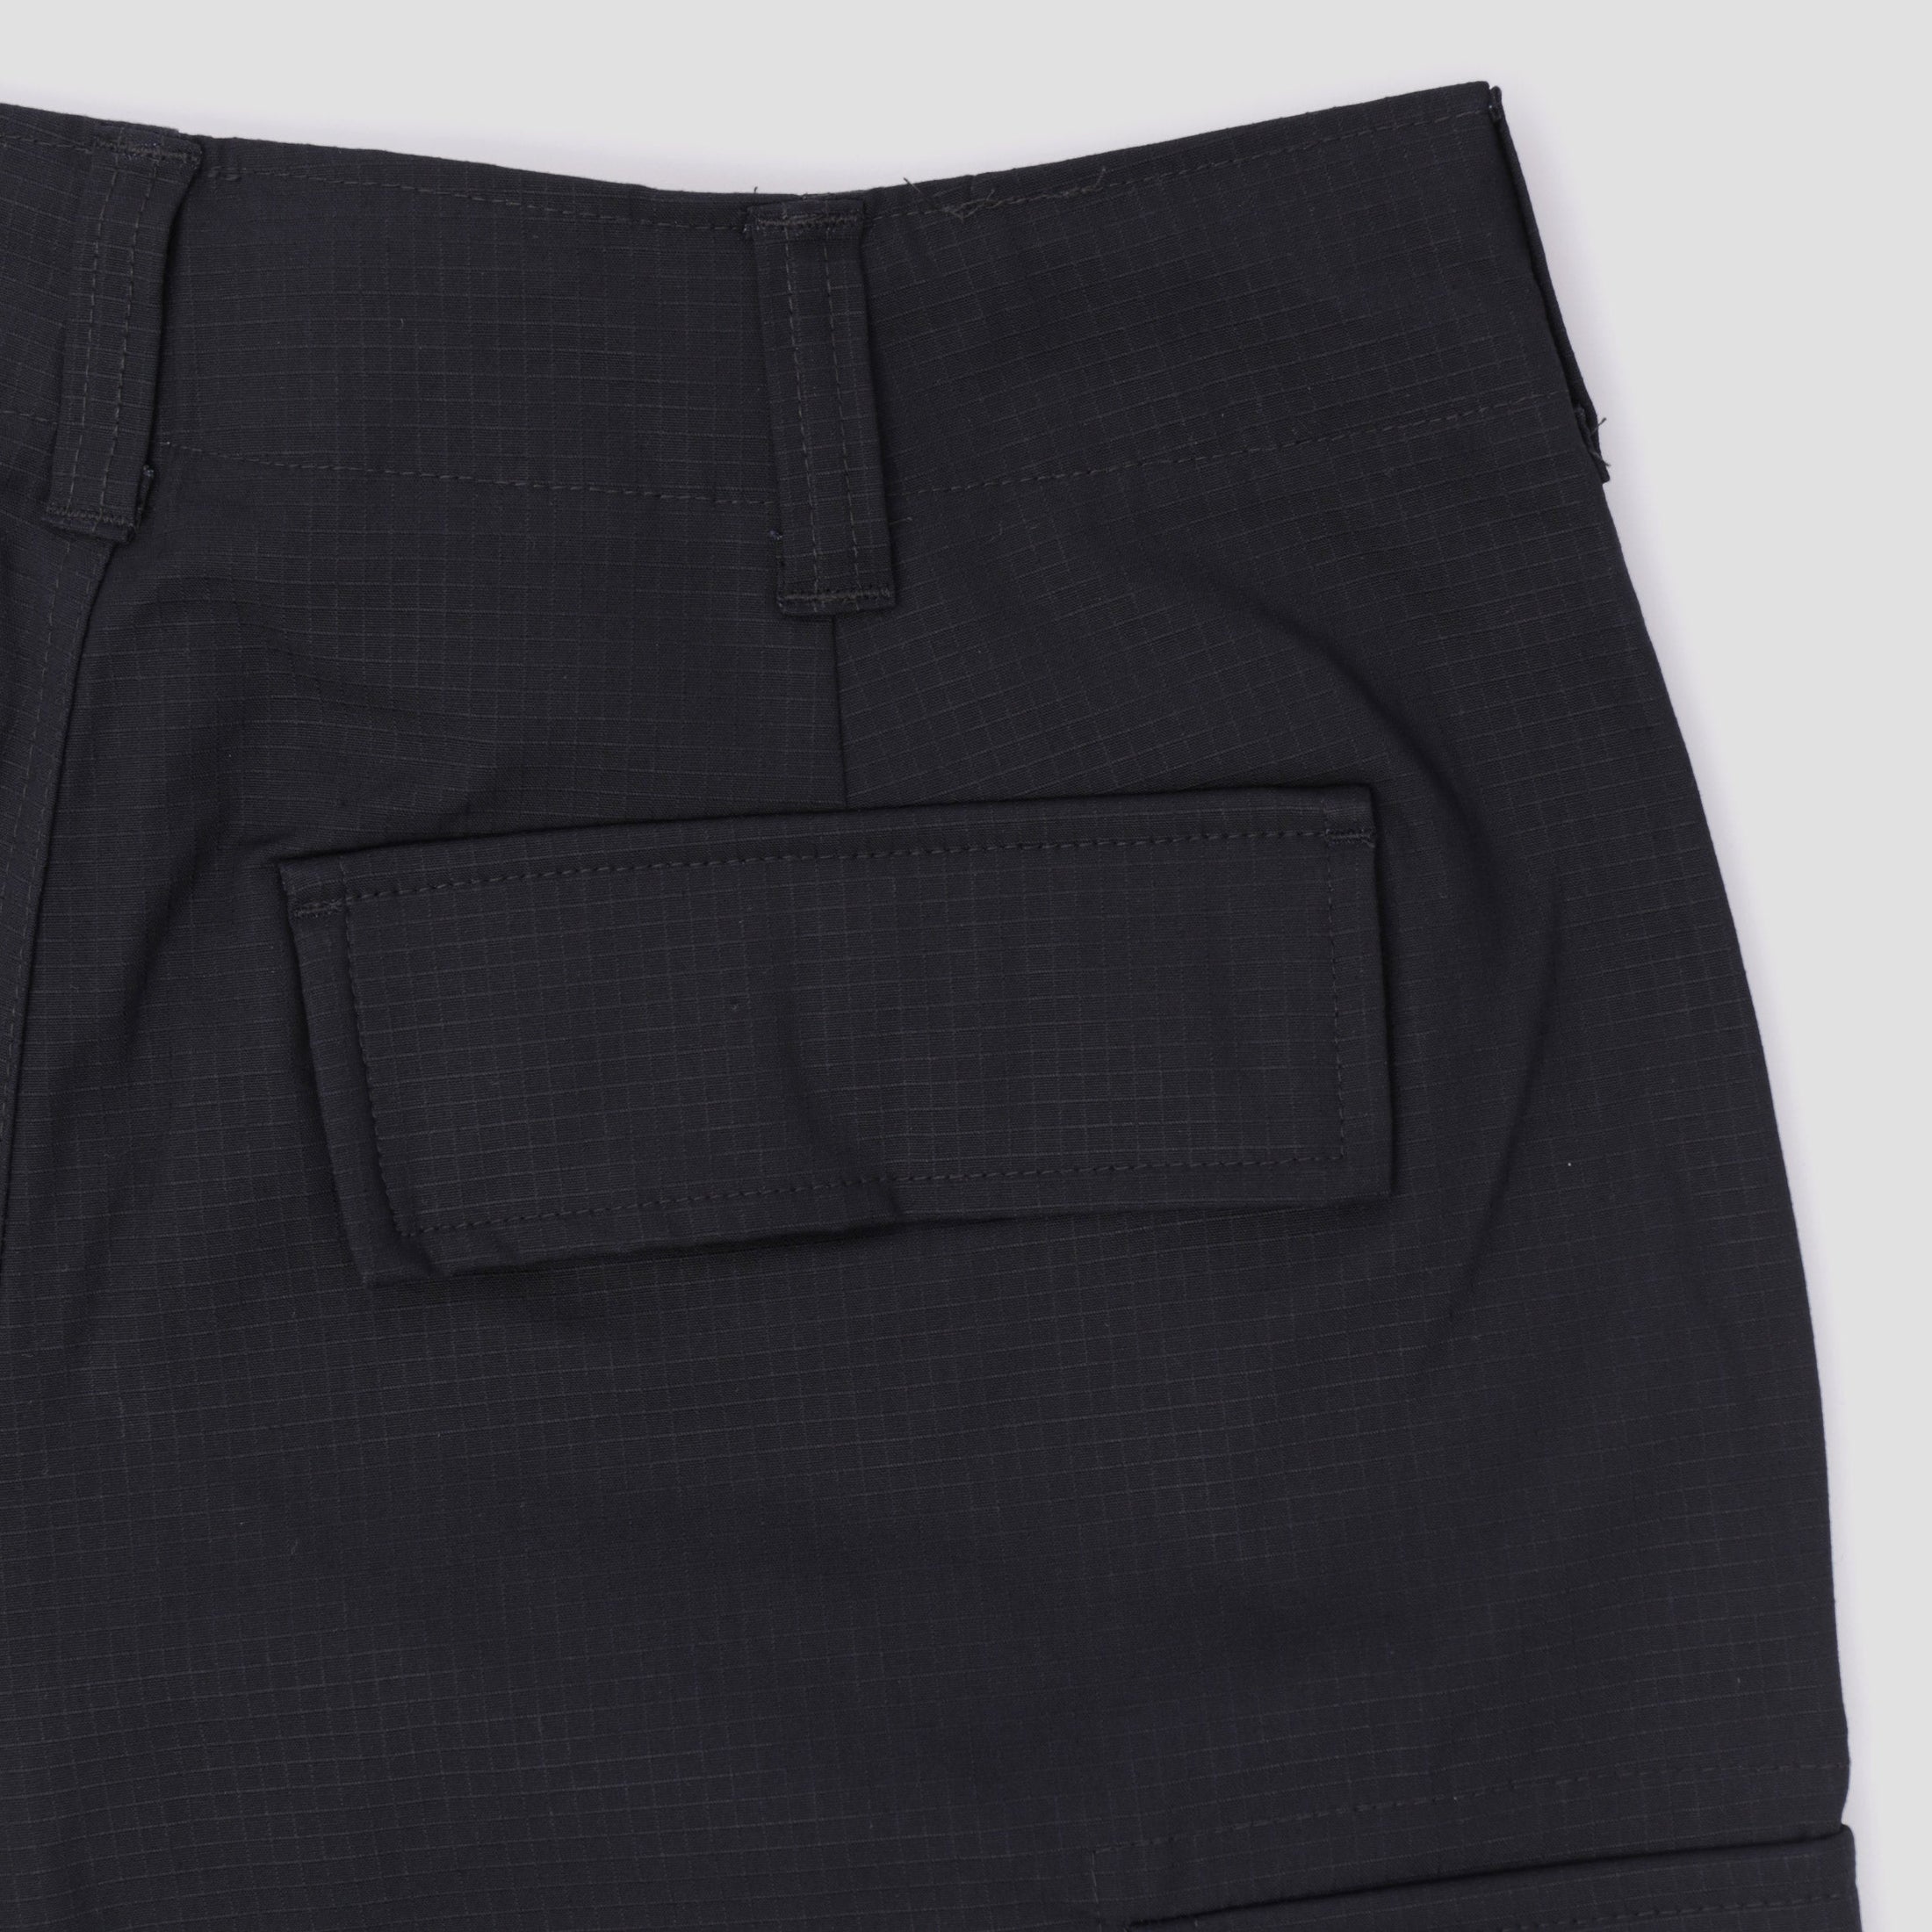 Nike SB Kearny Cargo Shorts Black